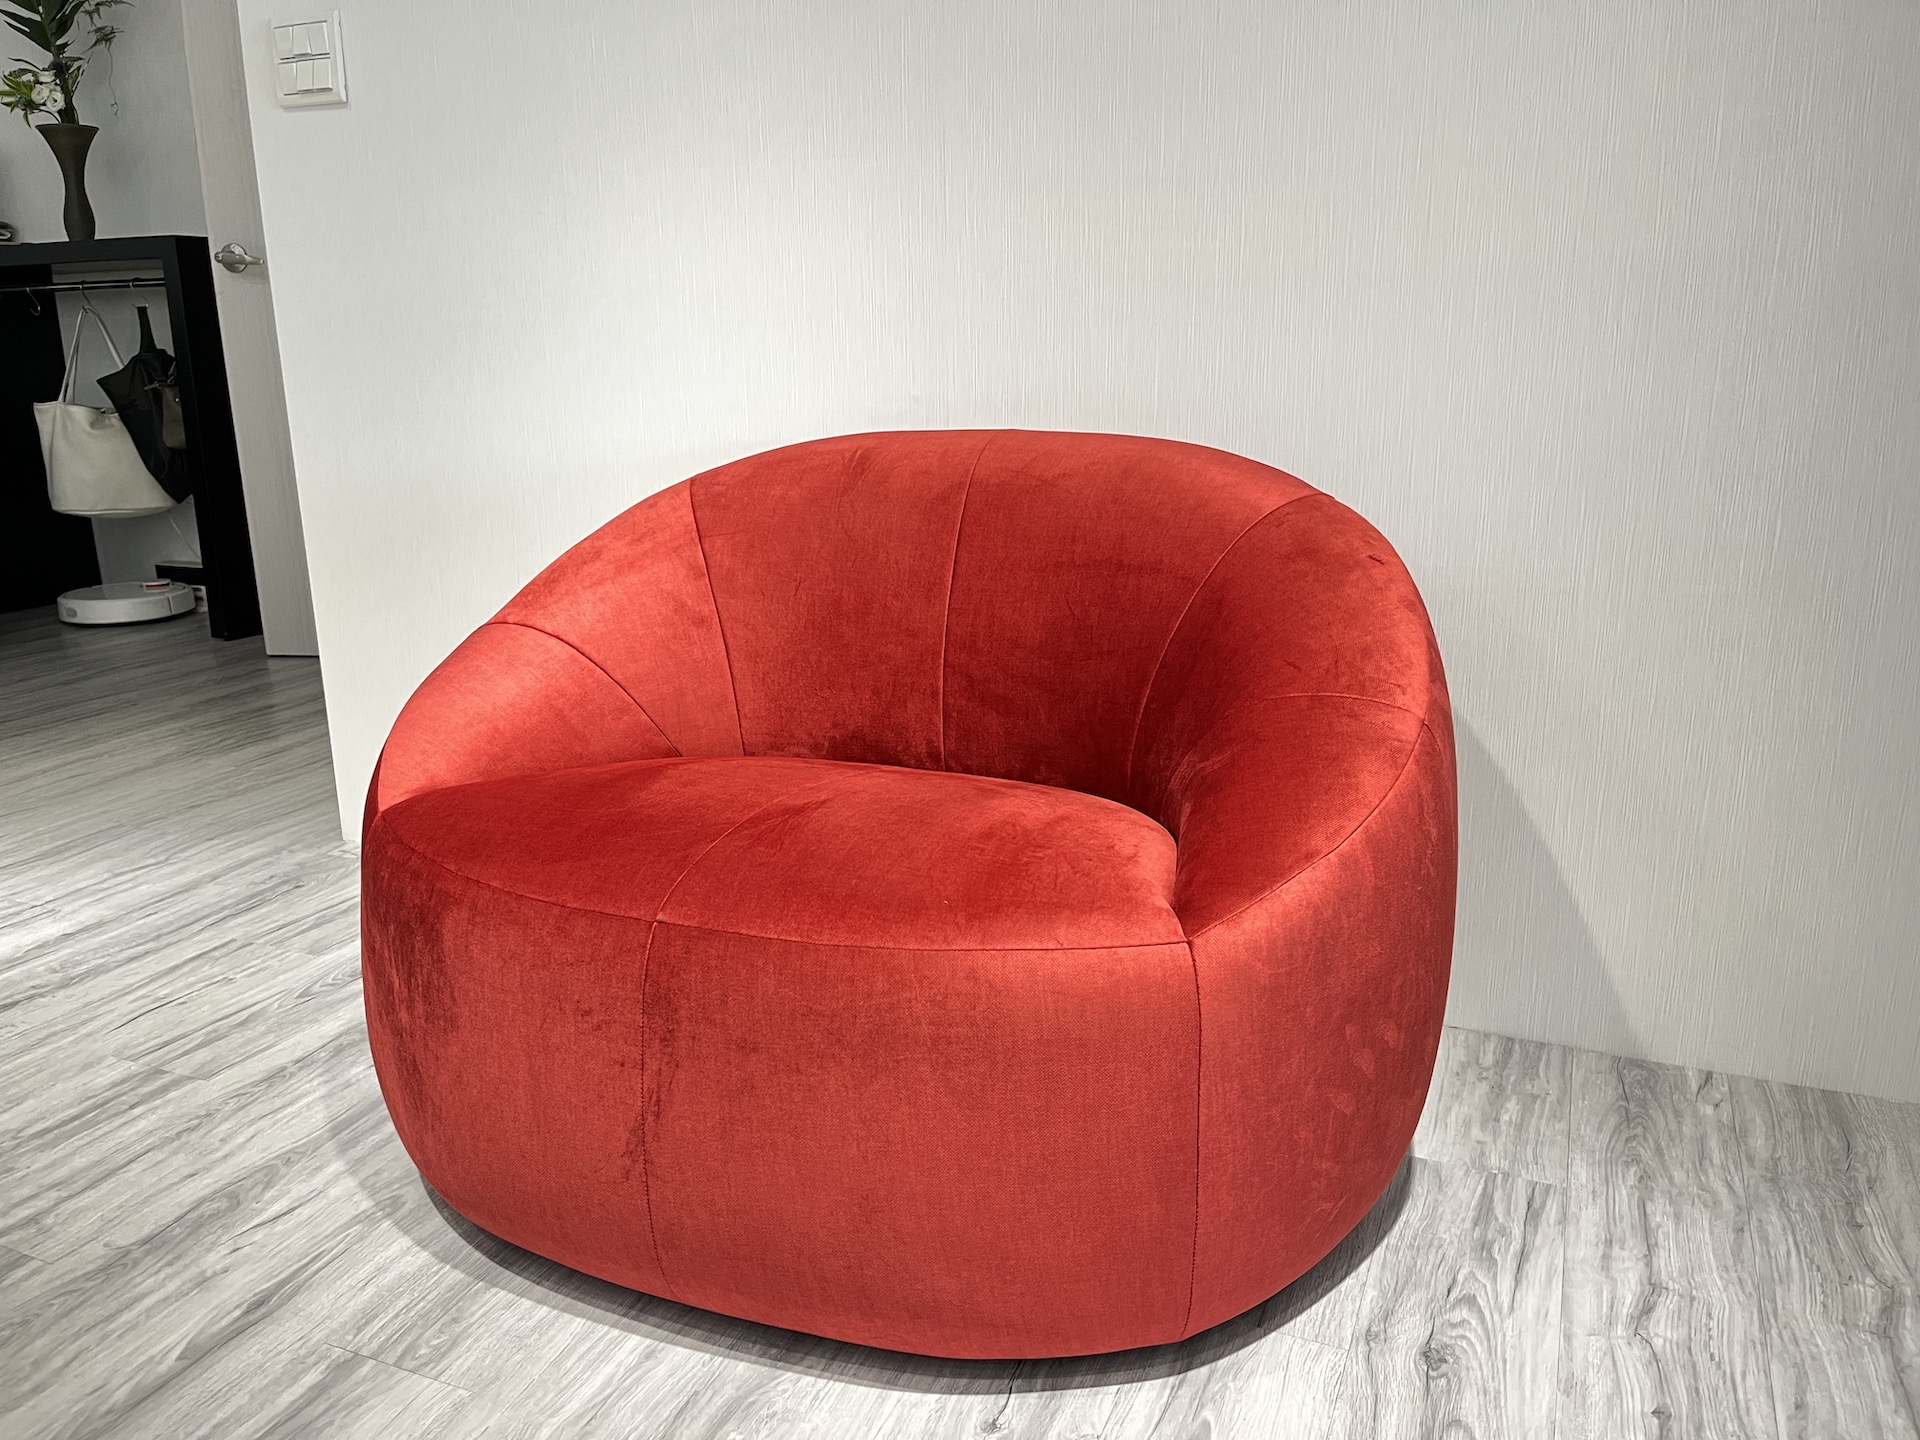 【客戶案例分享】單人弧形造型沙發分享